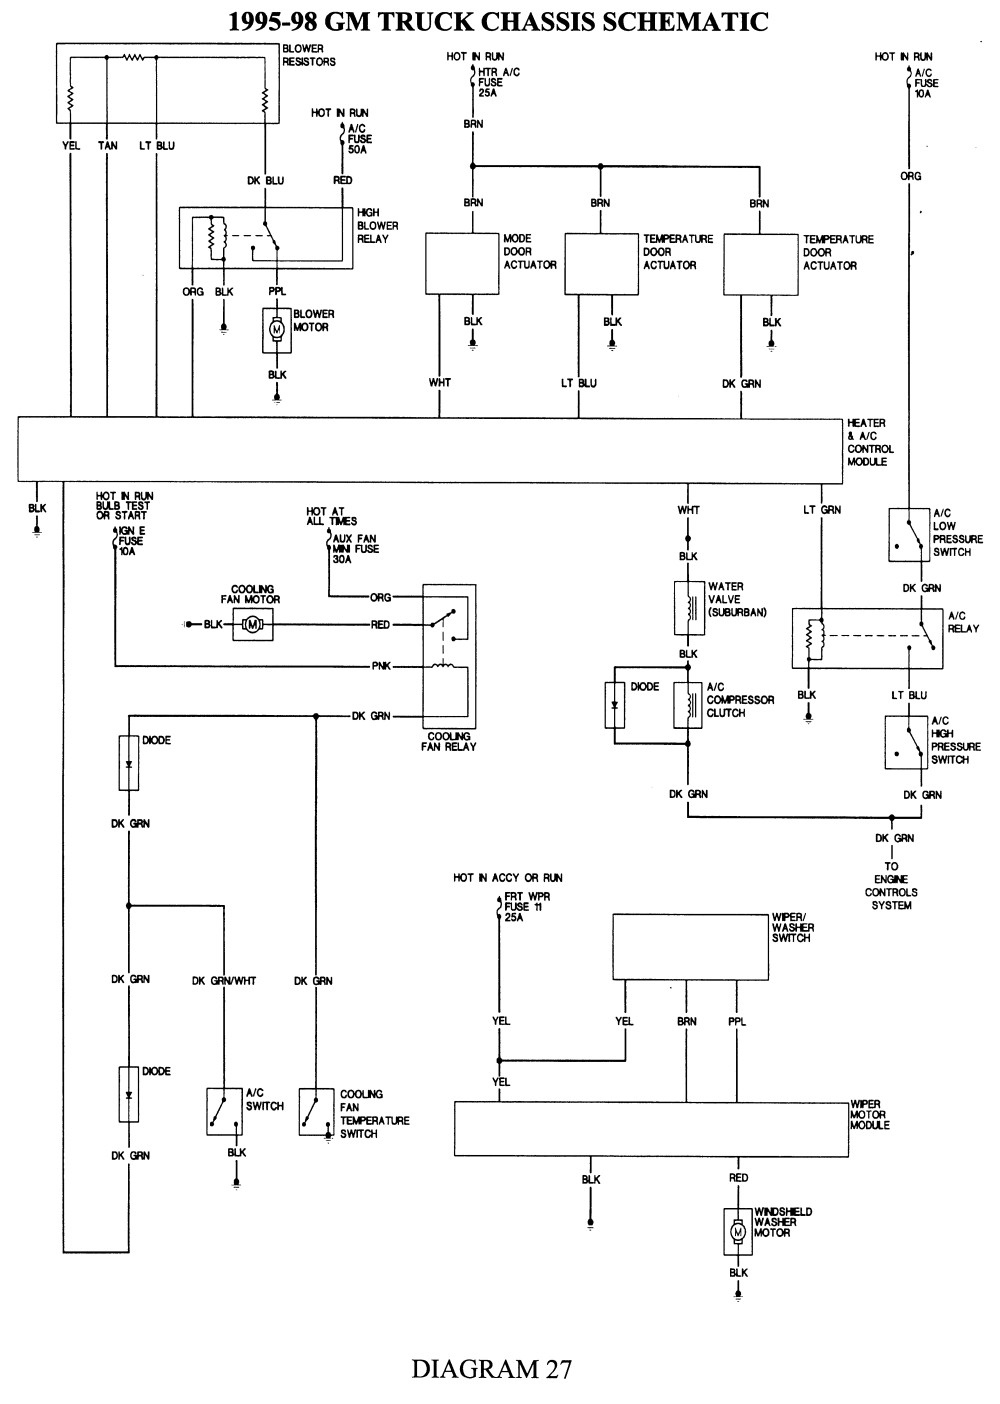 Repair Guides Wiring Diagrams Wiring Diagrams Autozone C1500 Wiring Diagram 7 C1500 Wiring Diagram